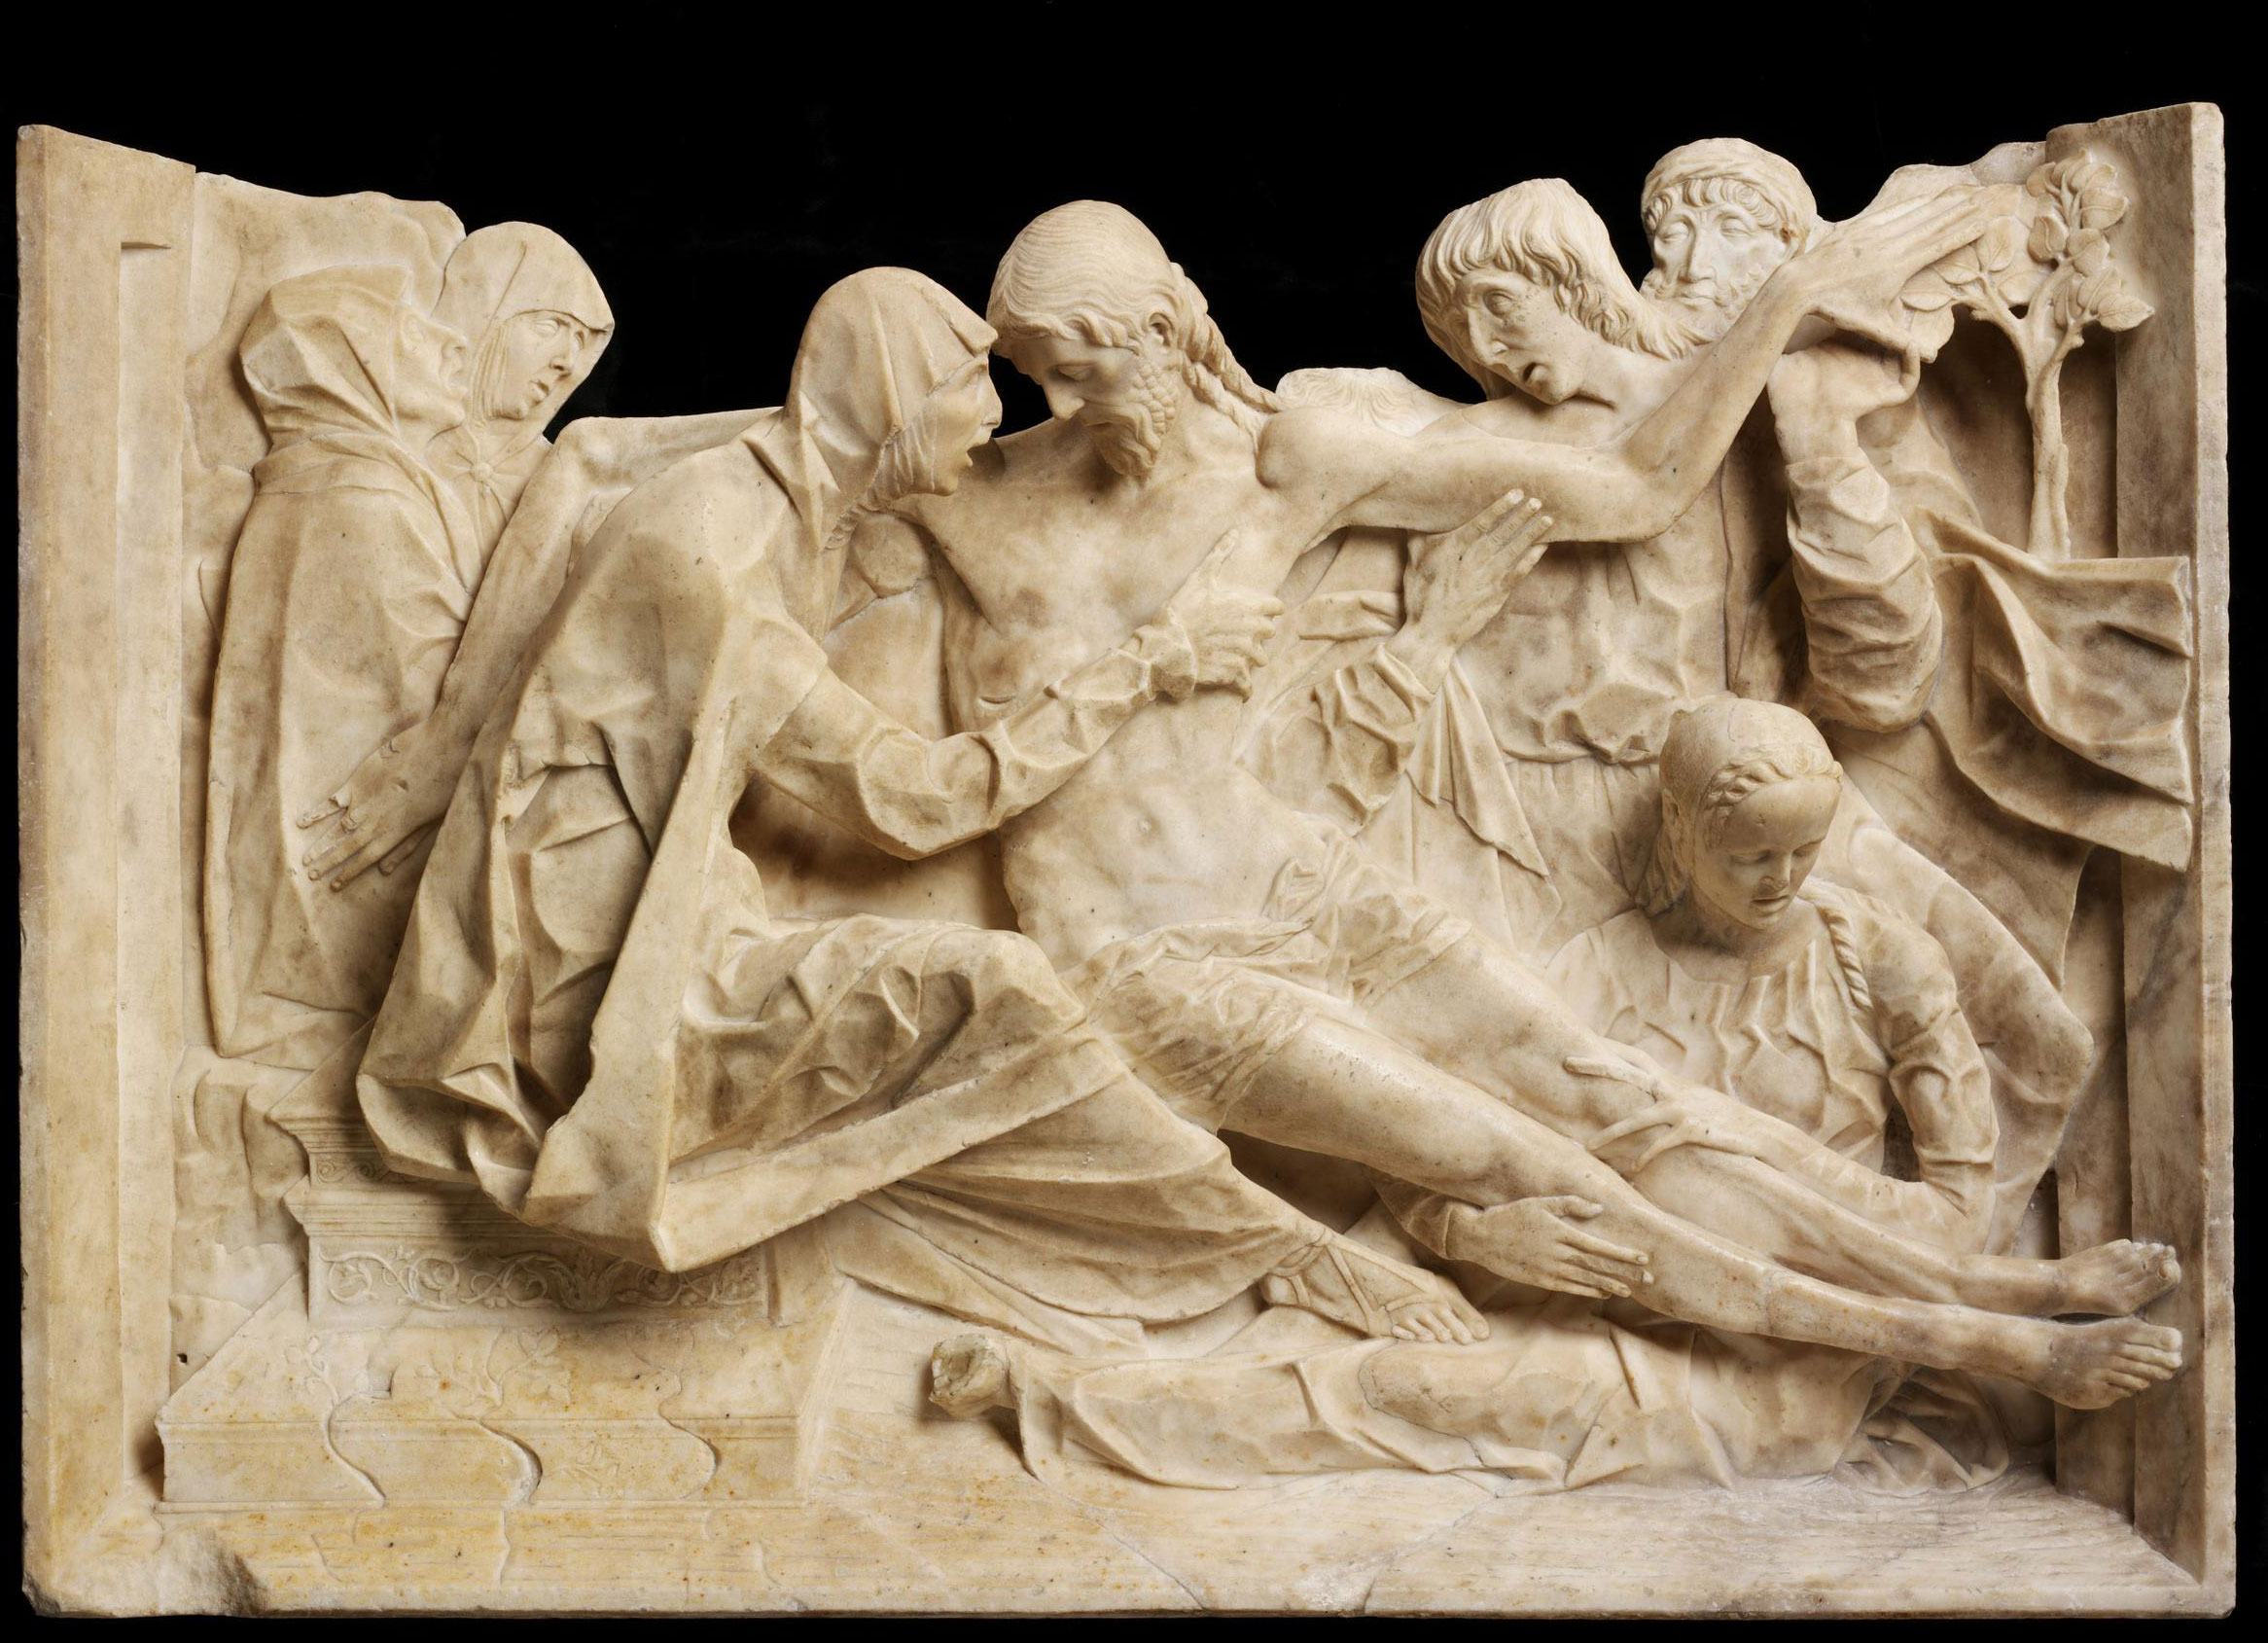 Antonio Mantegazza?, Compianto sul Cristo morto (1475-1490 circa; marmo, 60,2 x 88 x 15 cm; Londra, Victoria & Albert Museum)
